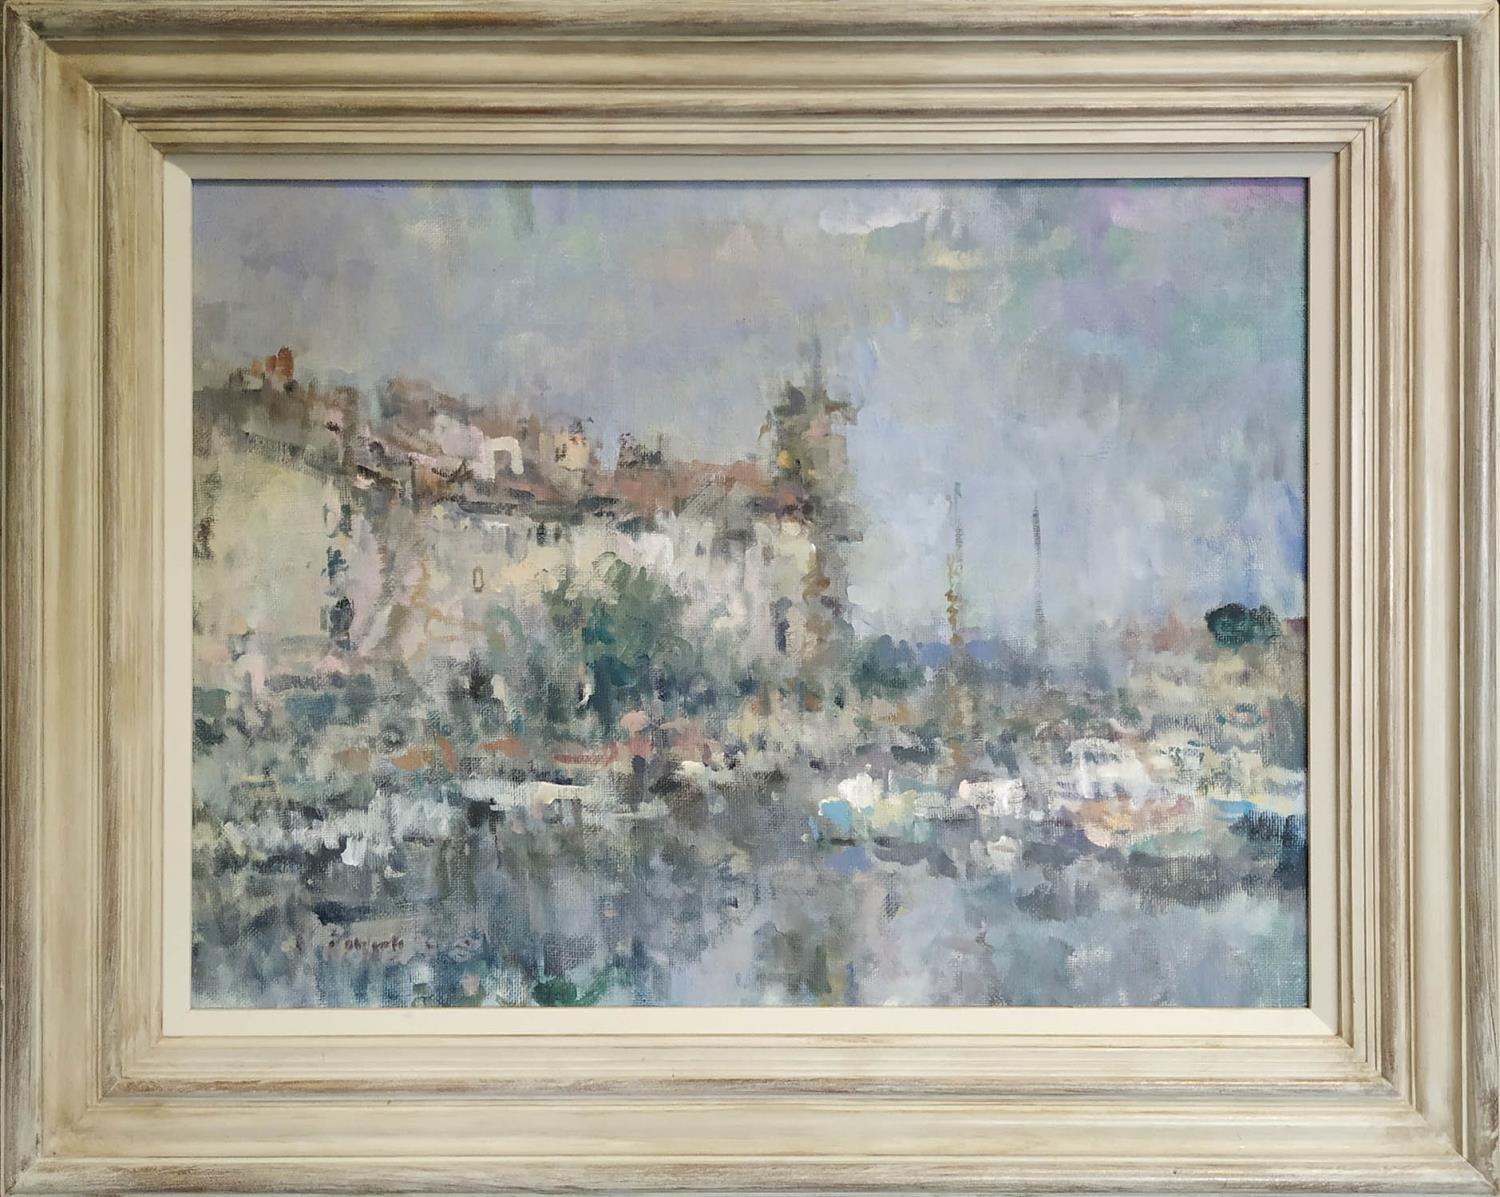 PHILLIP ROBERTS (Born USA), 'La ciotat Harbour, Cote d'Azur', oil on canvas, 44cm x 60cm, signed.